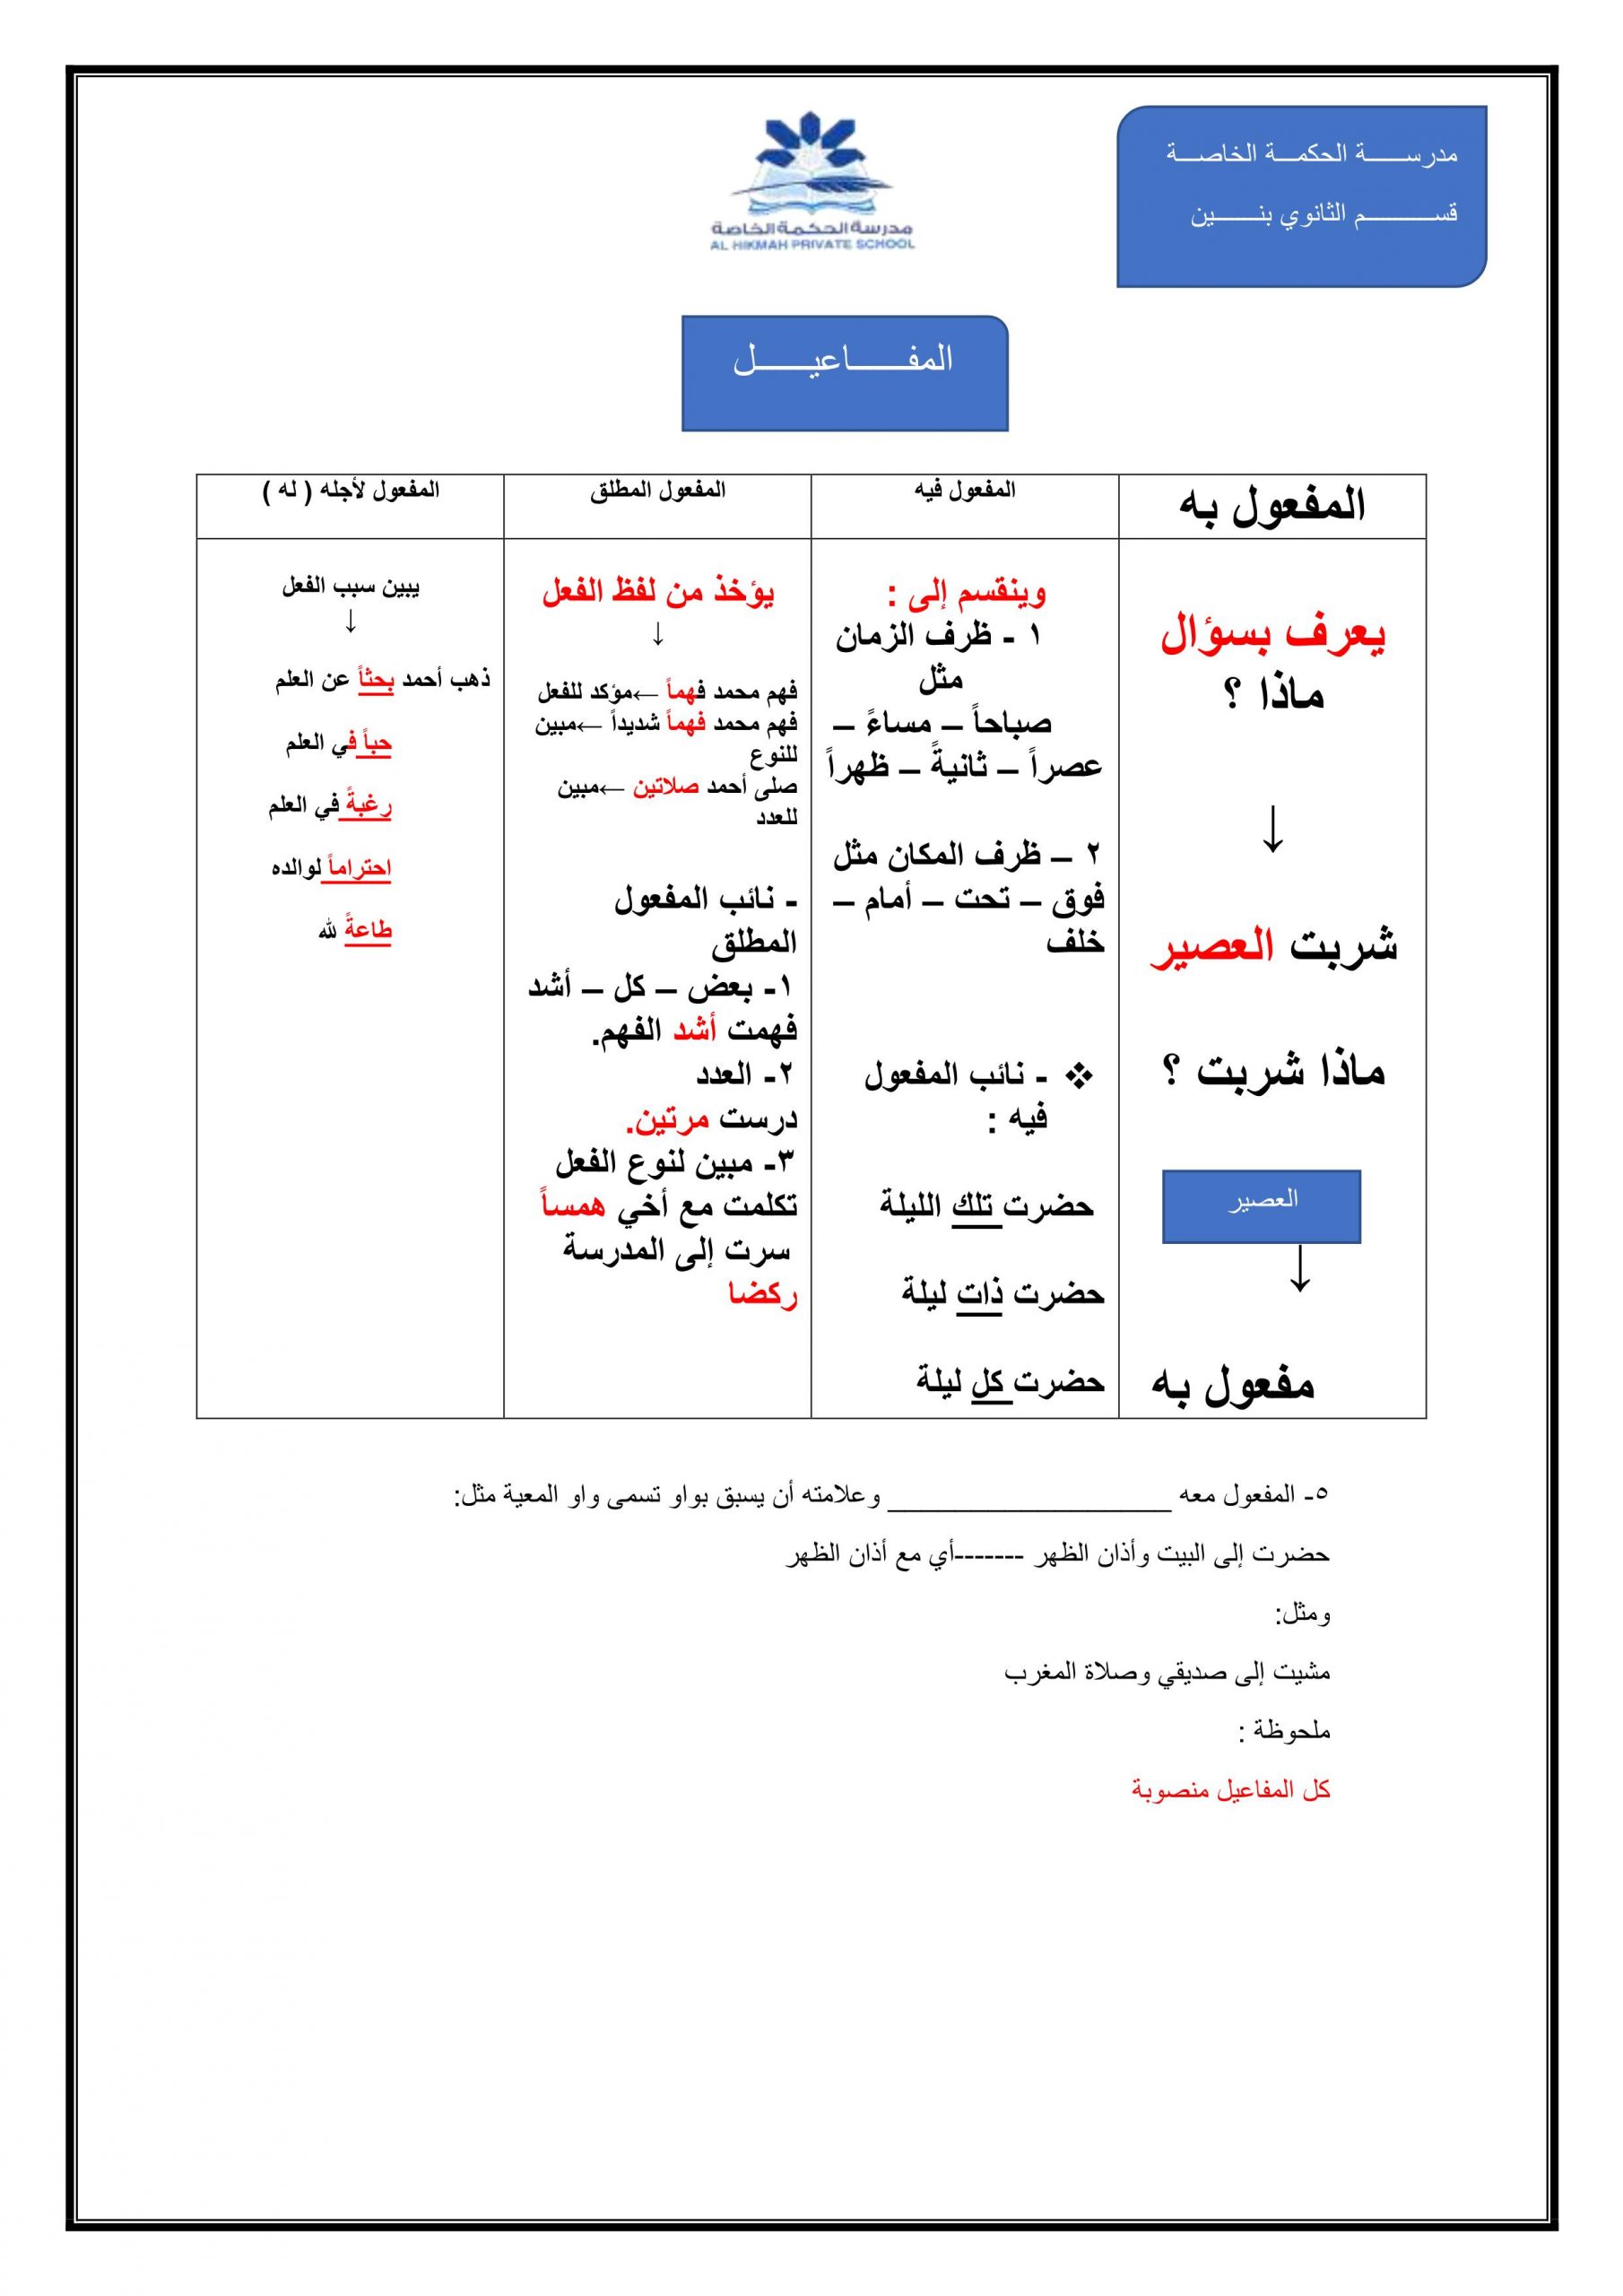 شرح درس المفاعيل الفصل الدراسي الثاني الصف الثاني عشر مادة اللغة العربية 